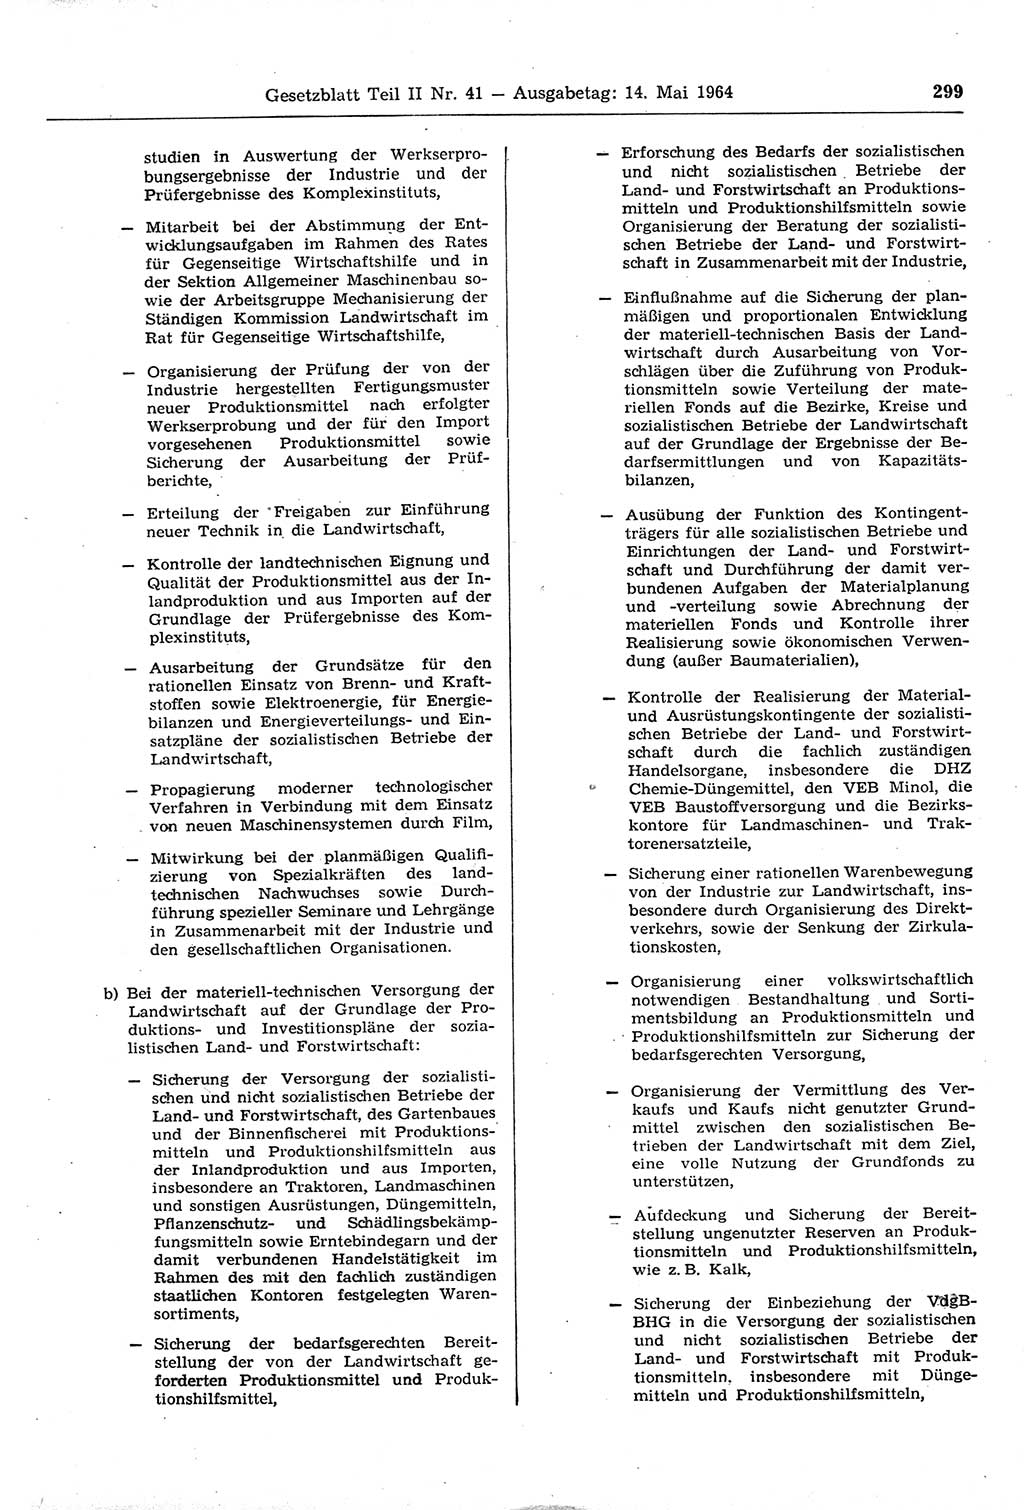 Gesetzblatt (GBl.) der Deutschen Demokratischen Republik (DDR) Teil ⅠⅠ 1964, Seite 299 (GBl. DDR ⅠⅠ 1964, S. 299)